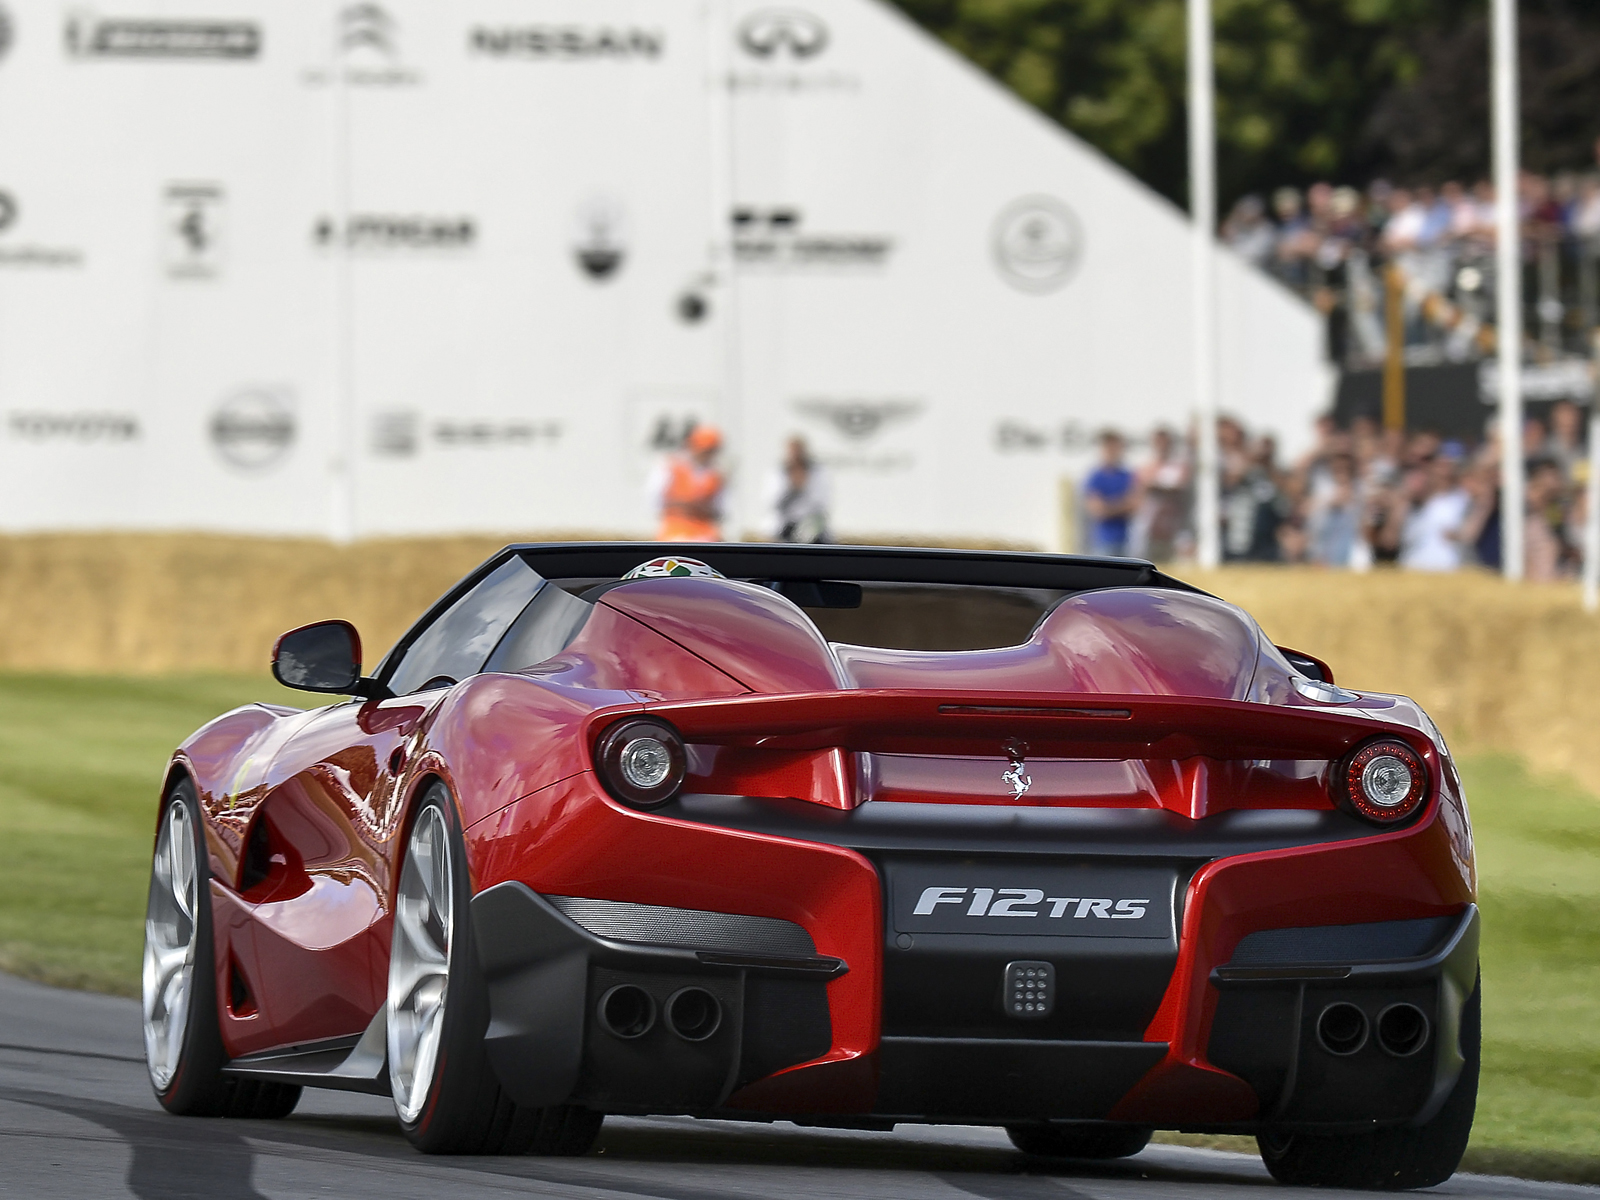 Los mejores fondos de pantalla de Ferrari F12 Trs para la pantalla del teléfono